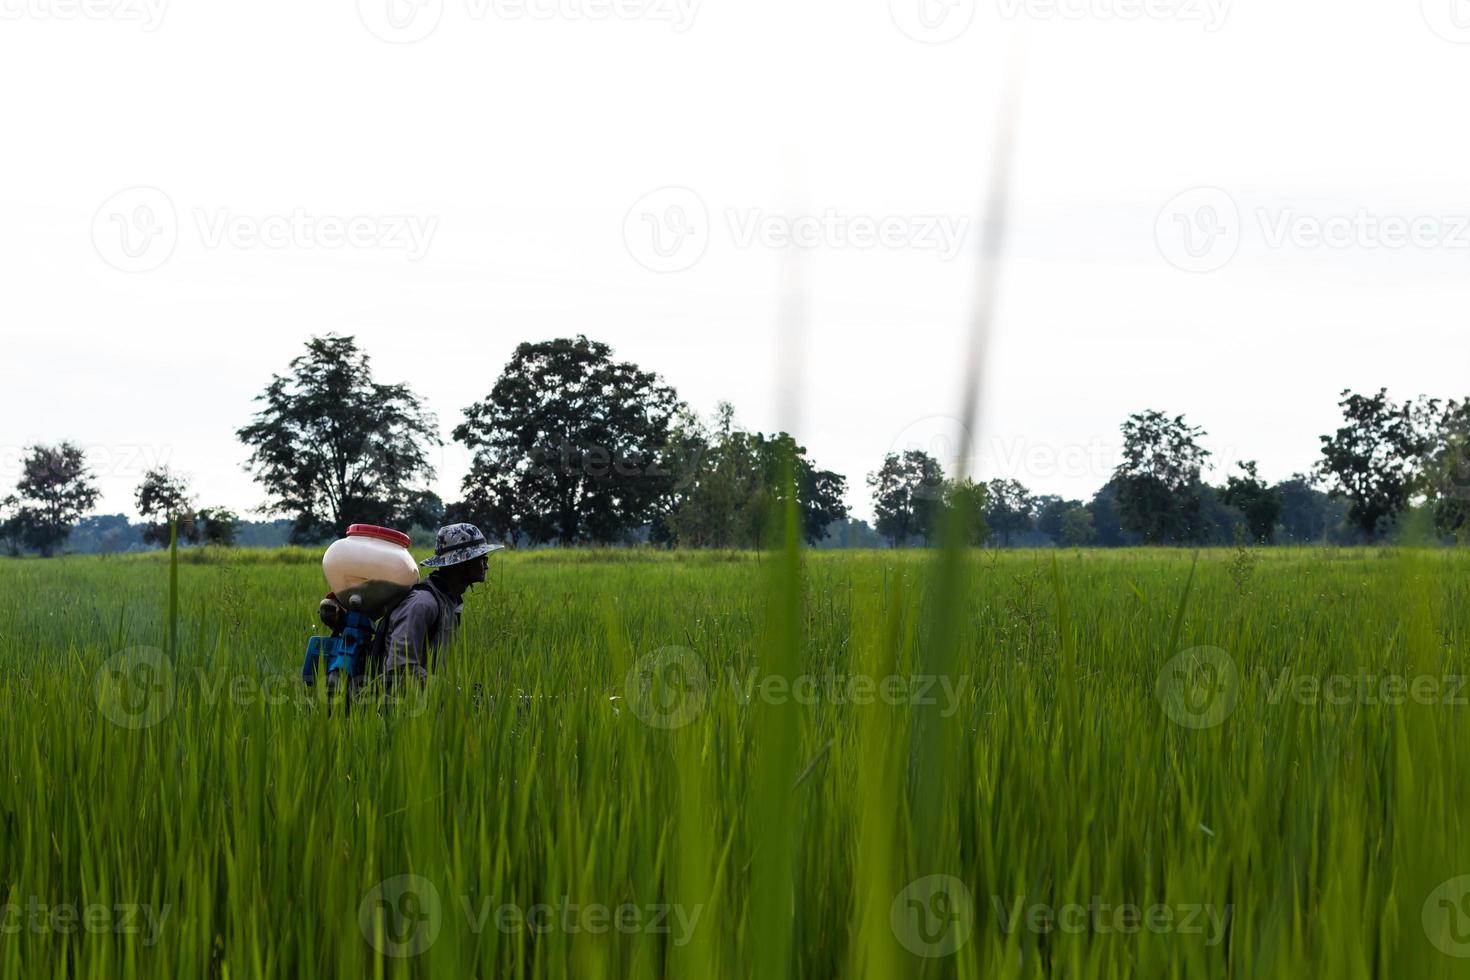 en bonde sprutade gödningsmedel i de gröna risfälten. foto